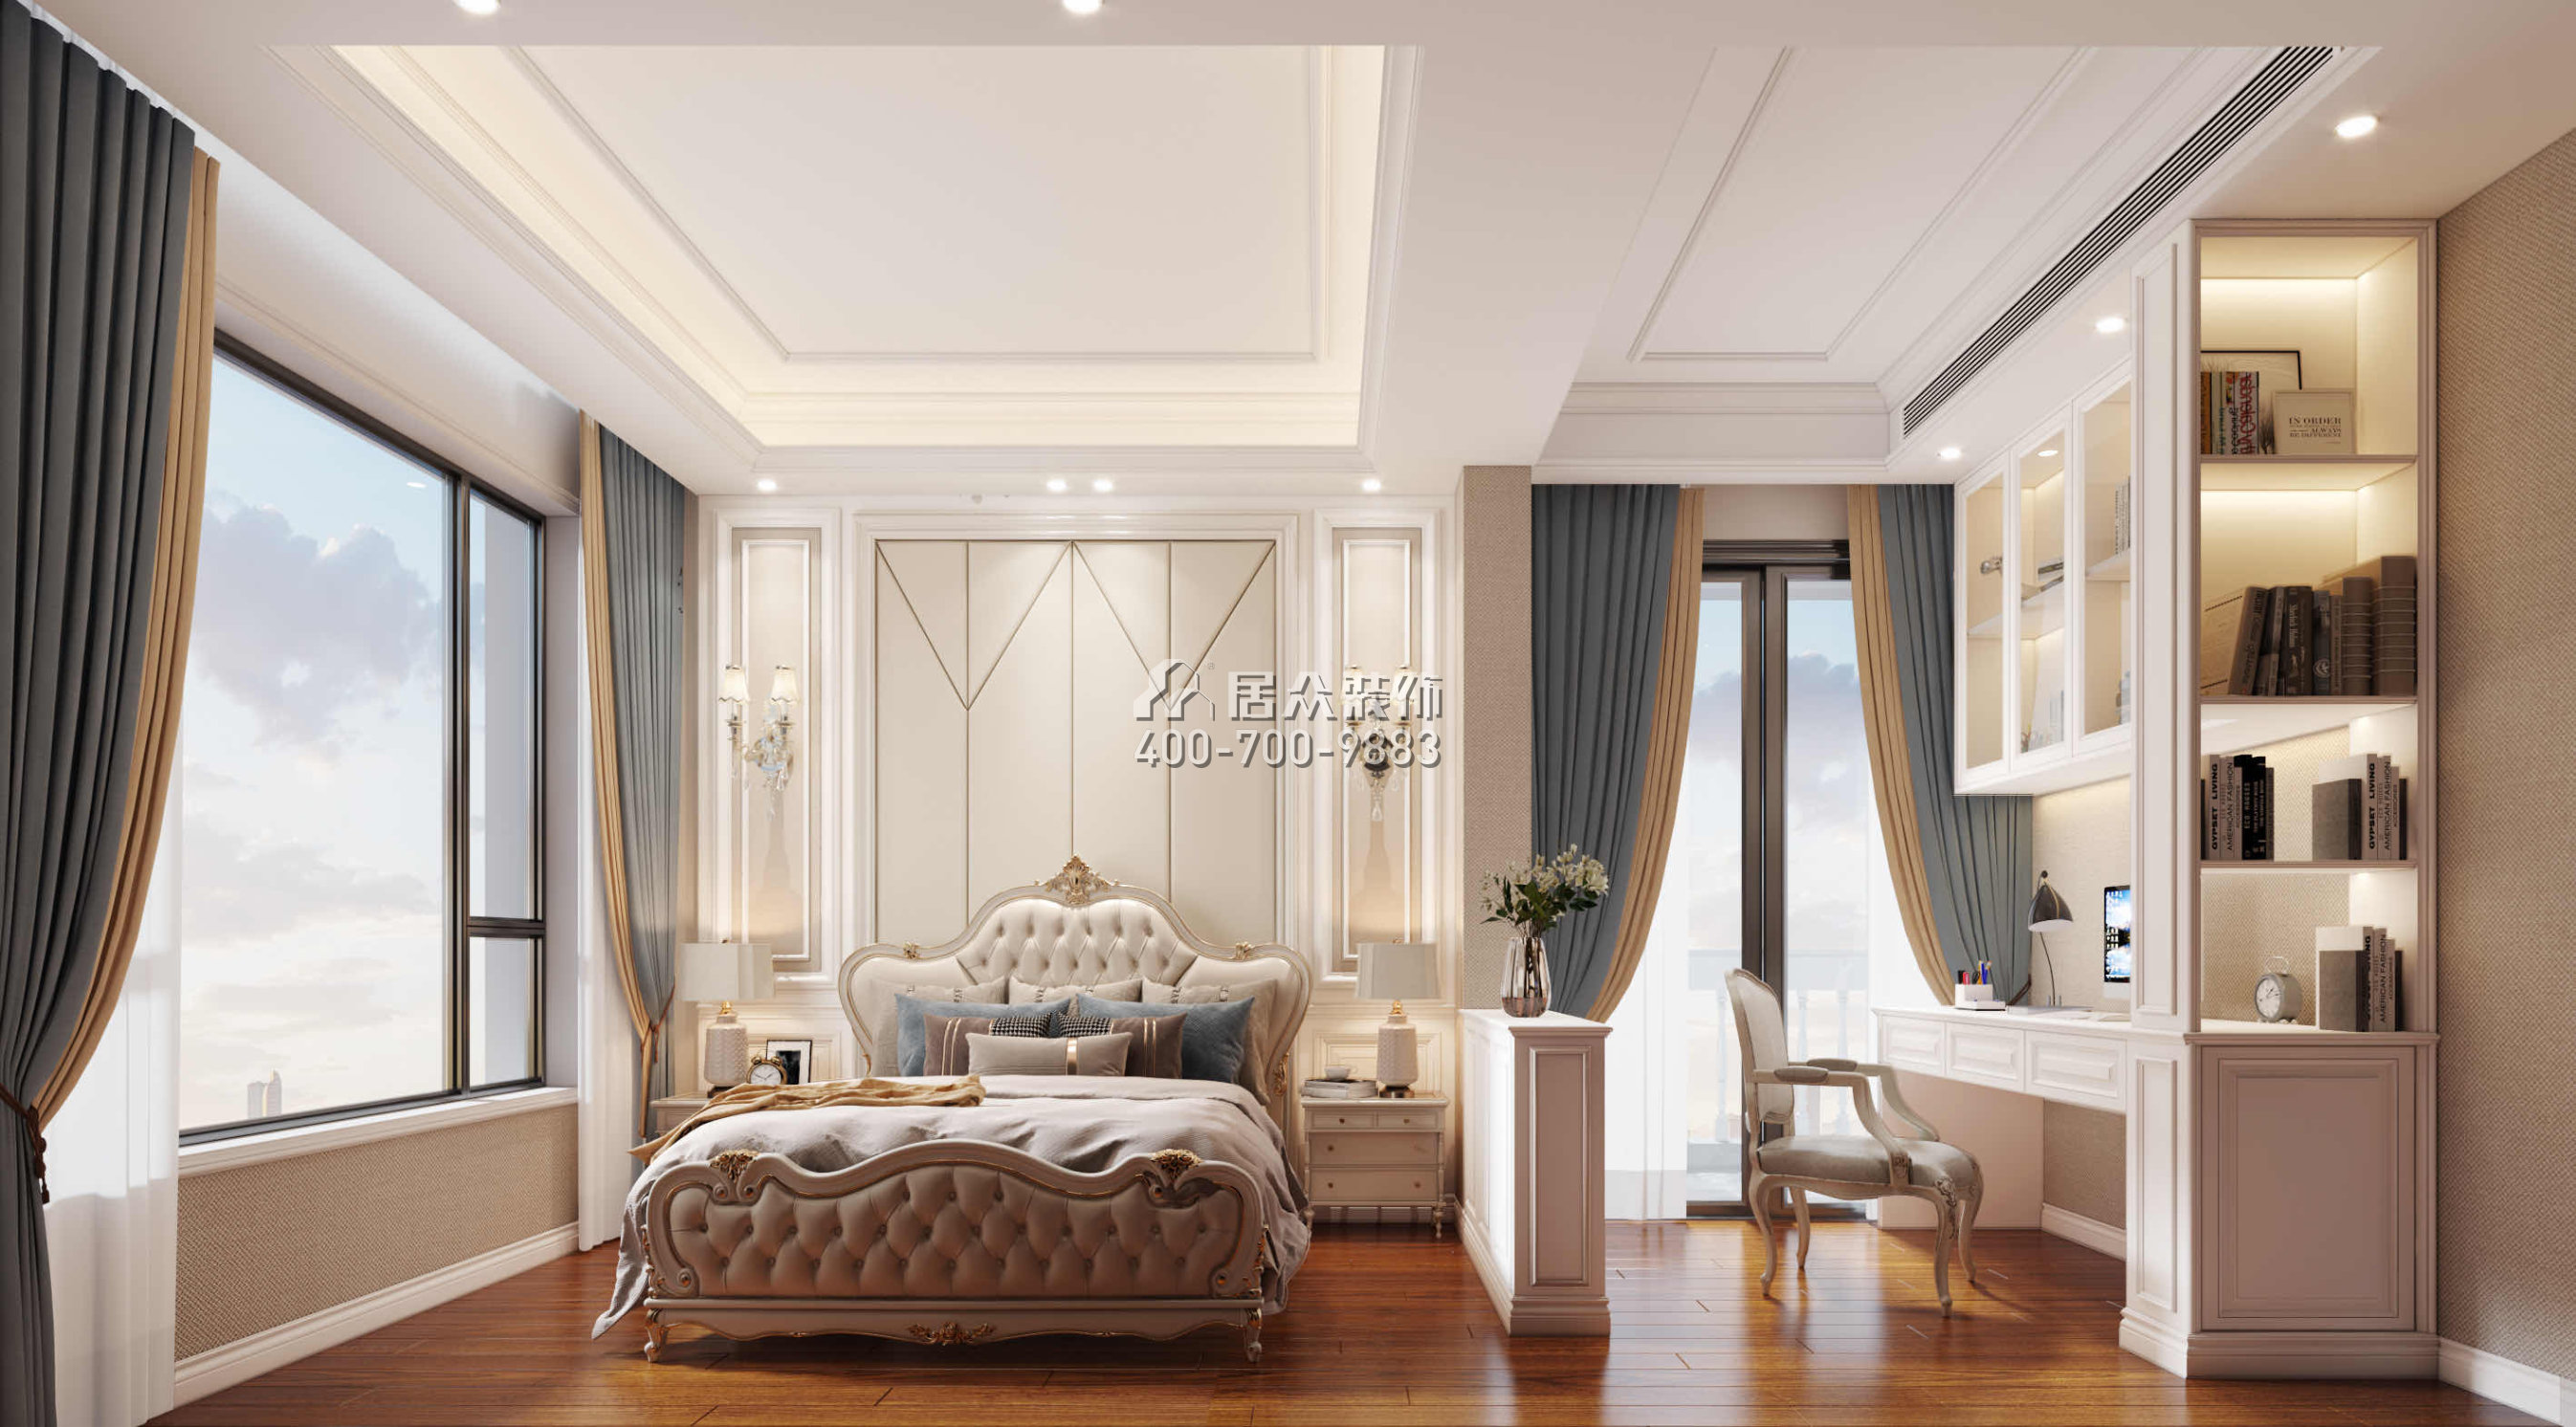 仁山智水780平方米欧式风格别墅户型卧室装修效果图